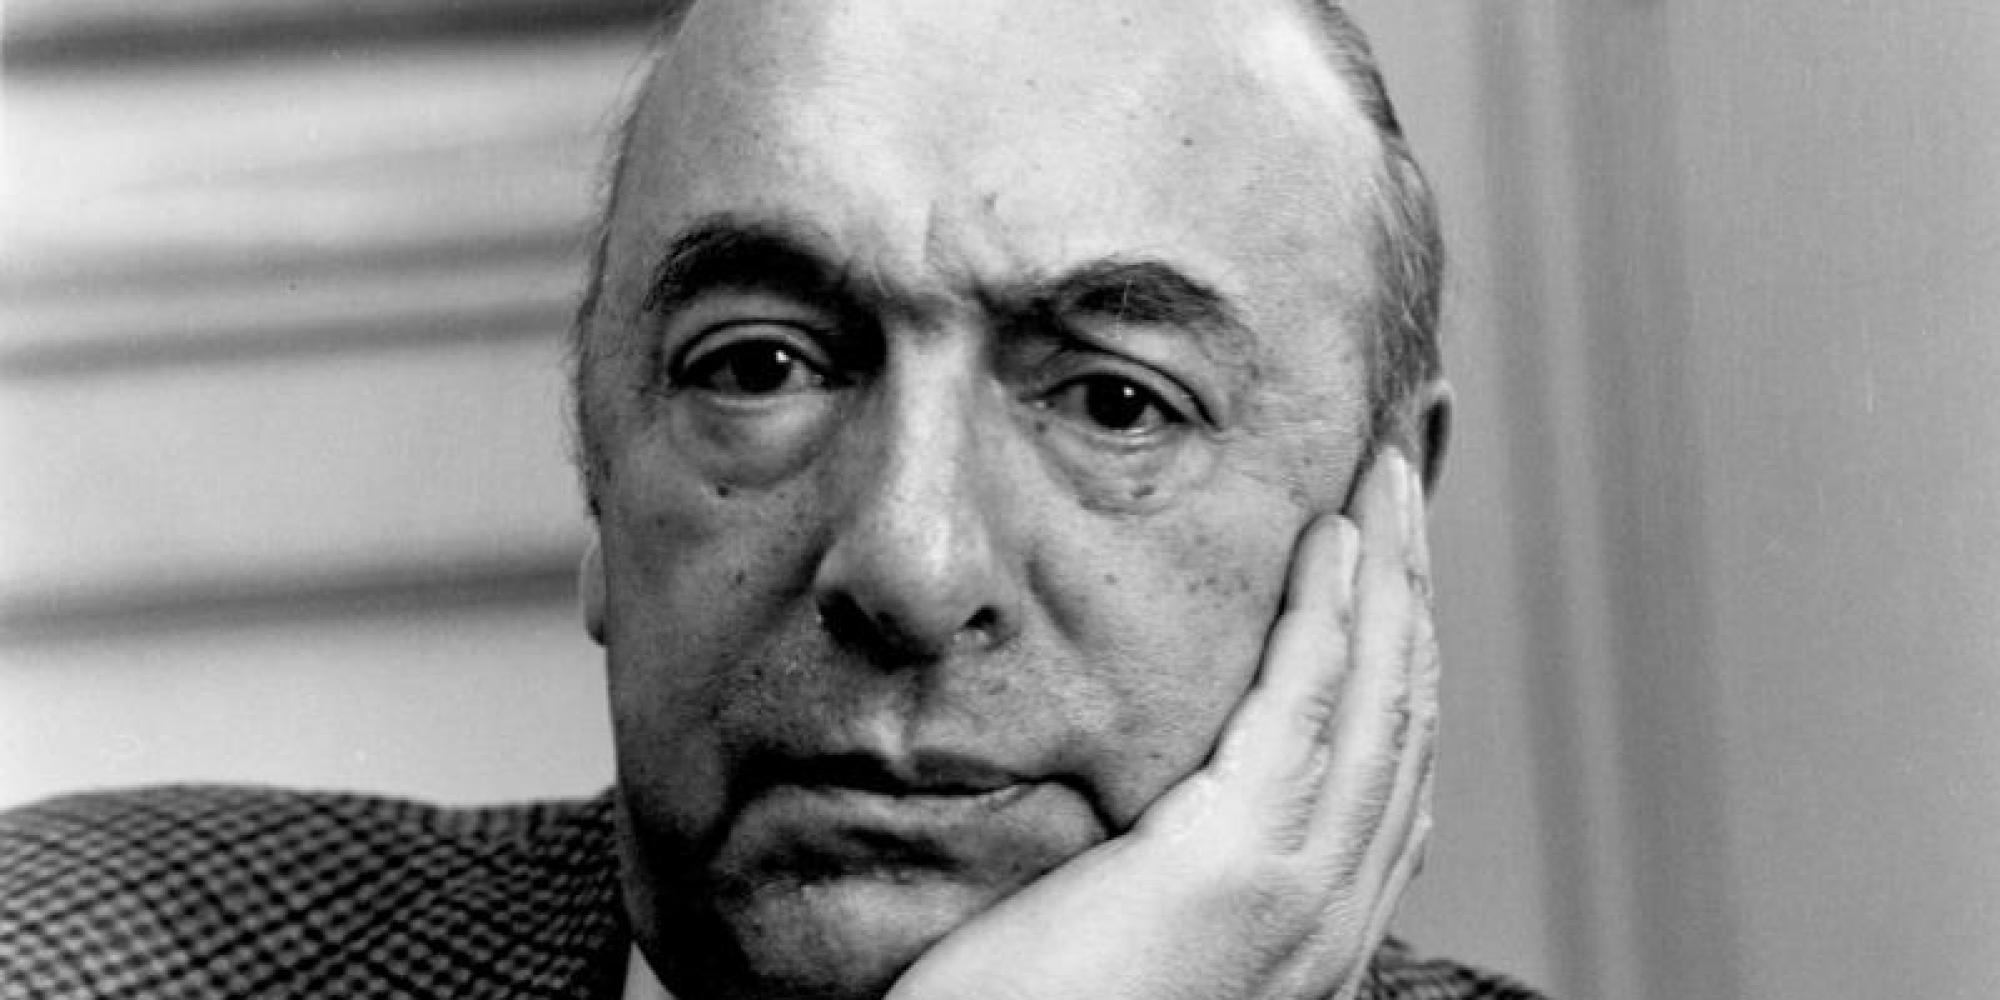 L' ecrivain chilien Pablo Neruda (1904-1973, nom de plume de Neftali Ricardo Reyes Basoalto) vers 1969 --- chilean writer Pablo Neruda, (1904-1973, pen-name of Neftali Ricardo Reyes Basoalto) c. 1969